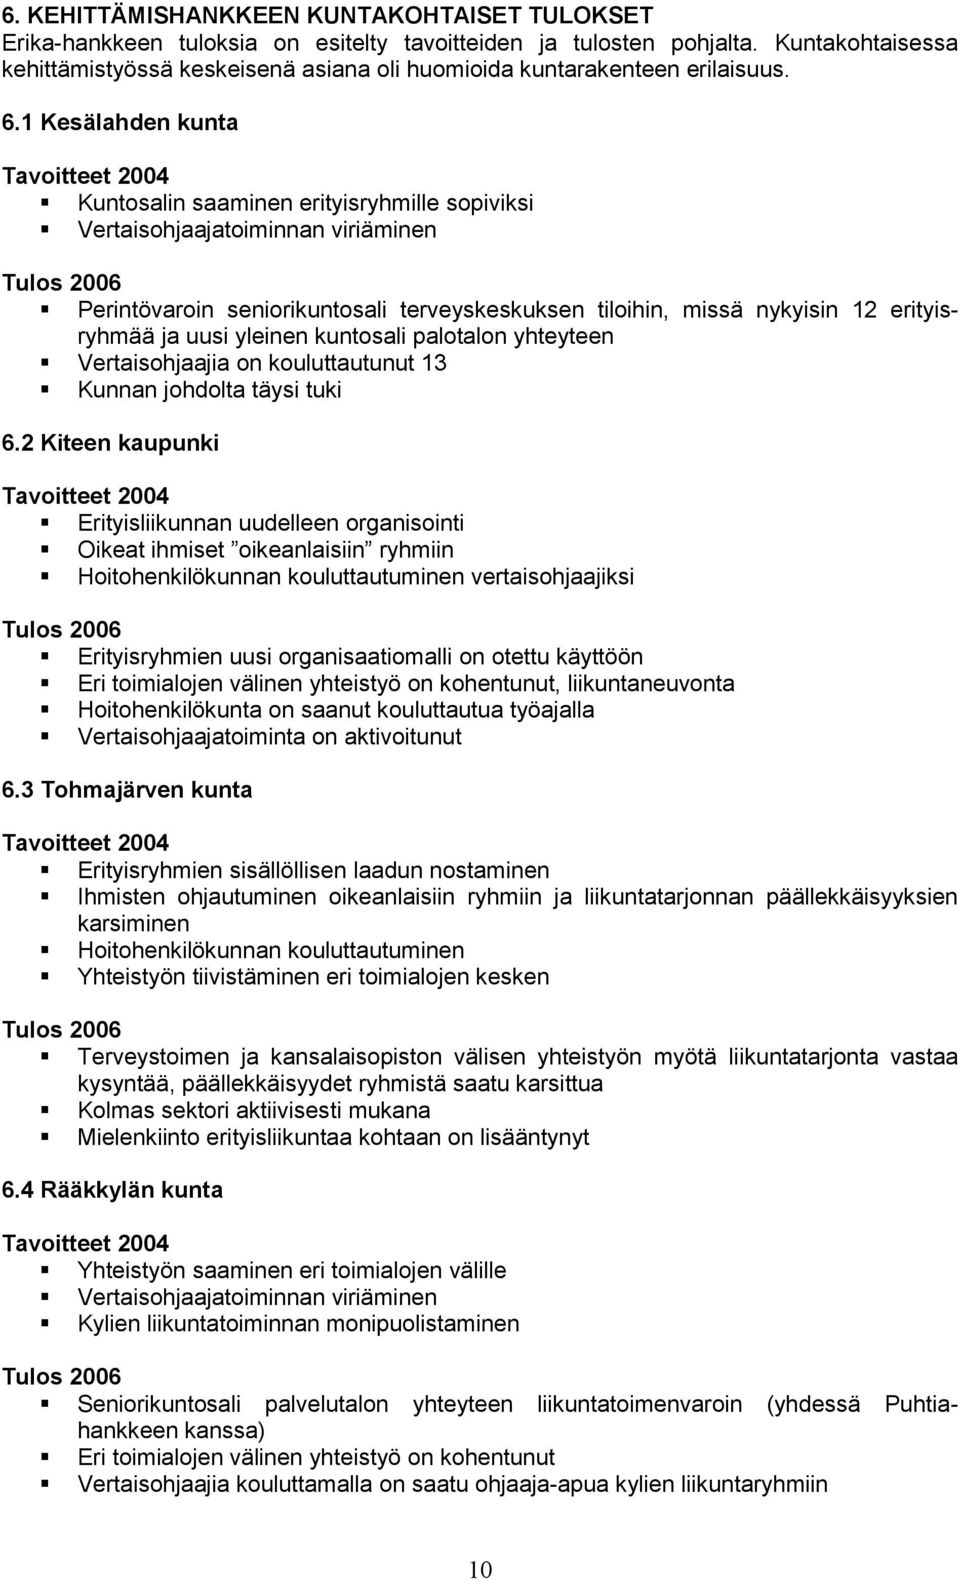 1 Kesälahden kunta Tavoitteet 2004 Kuntosalin saaminen erityisryhmille sopiviksi Vertaisohjaajatoiminnan viriäminen Tulos 2006 Perintövaroin seniorikuntosali terveyskeskuksen tiloihin, missä nykyisin